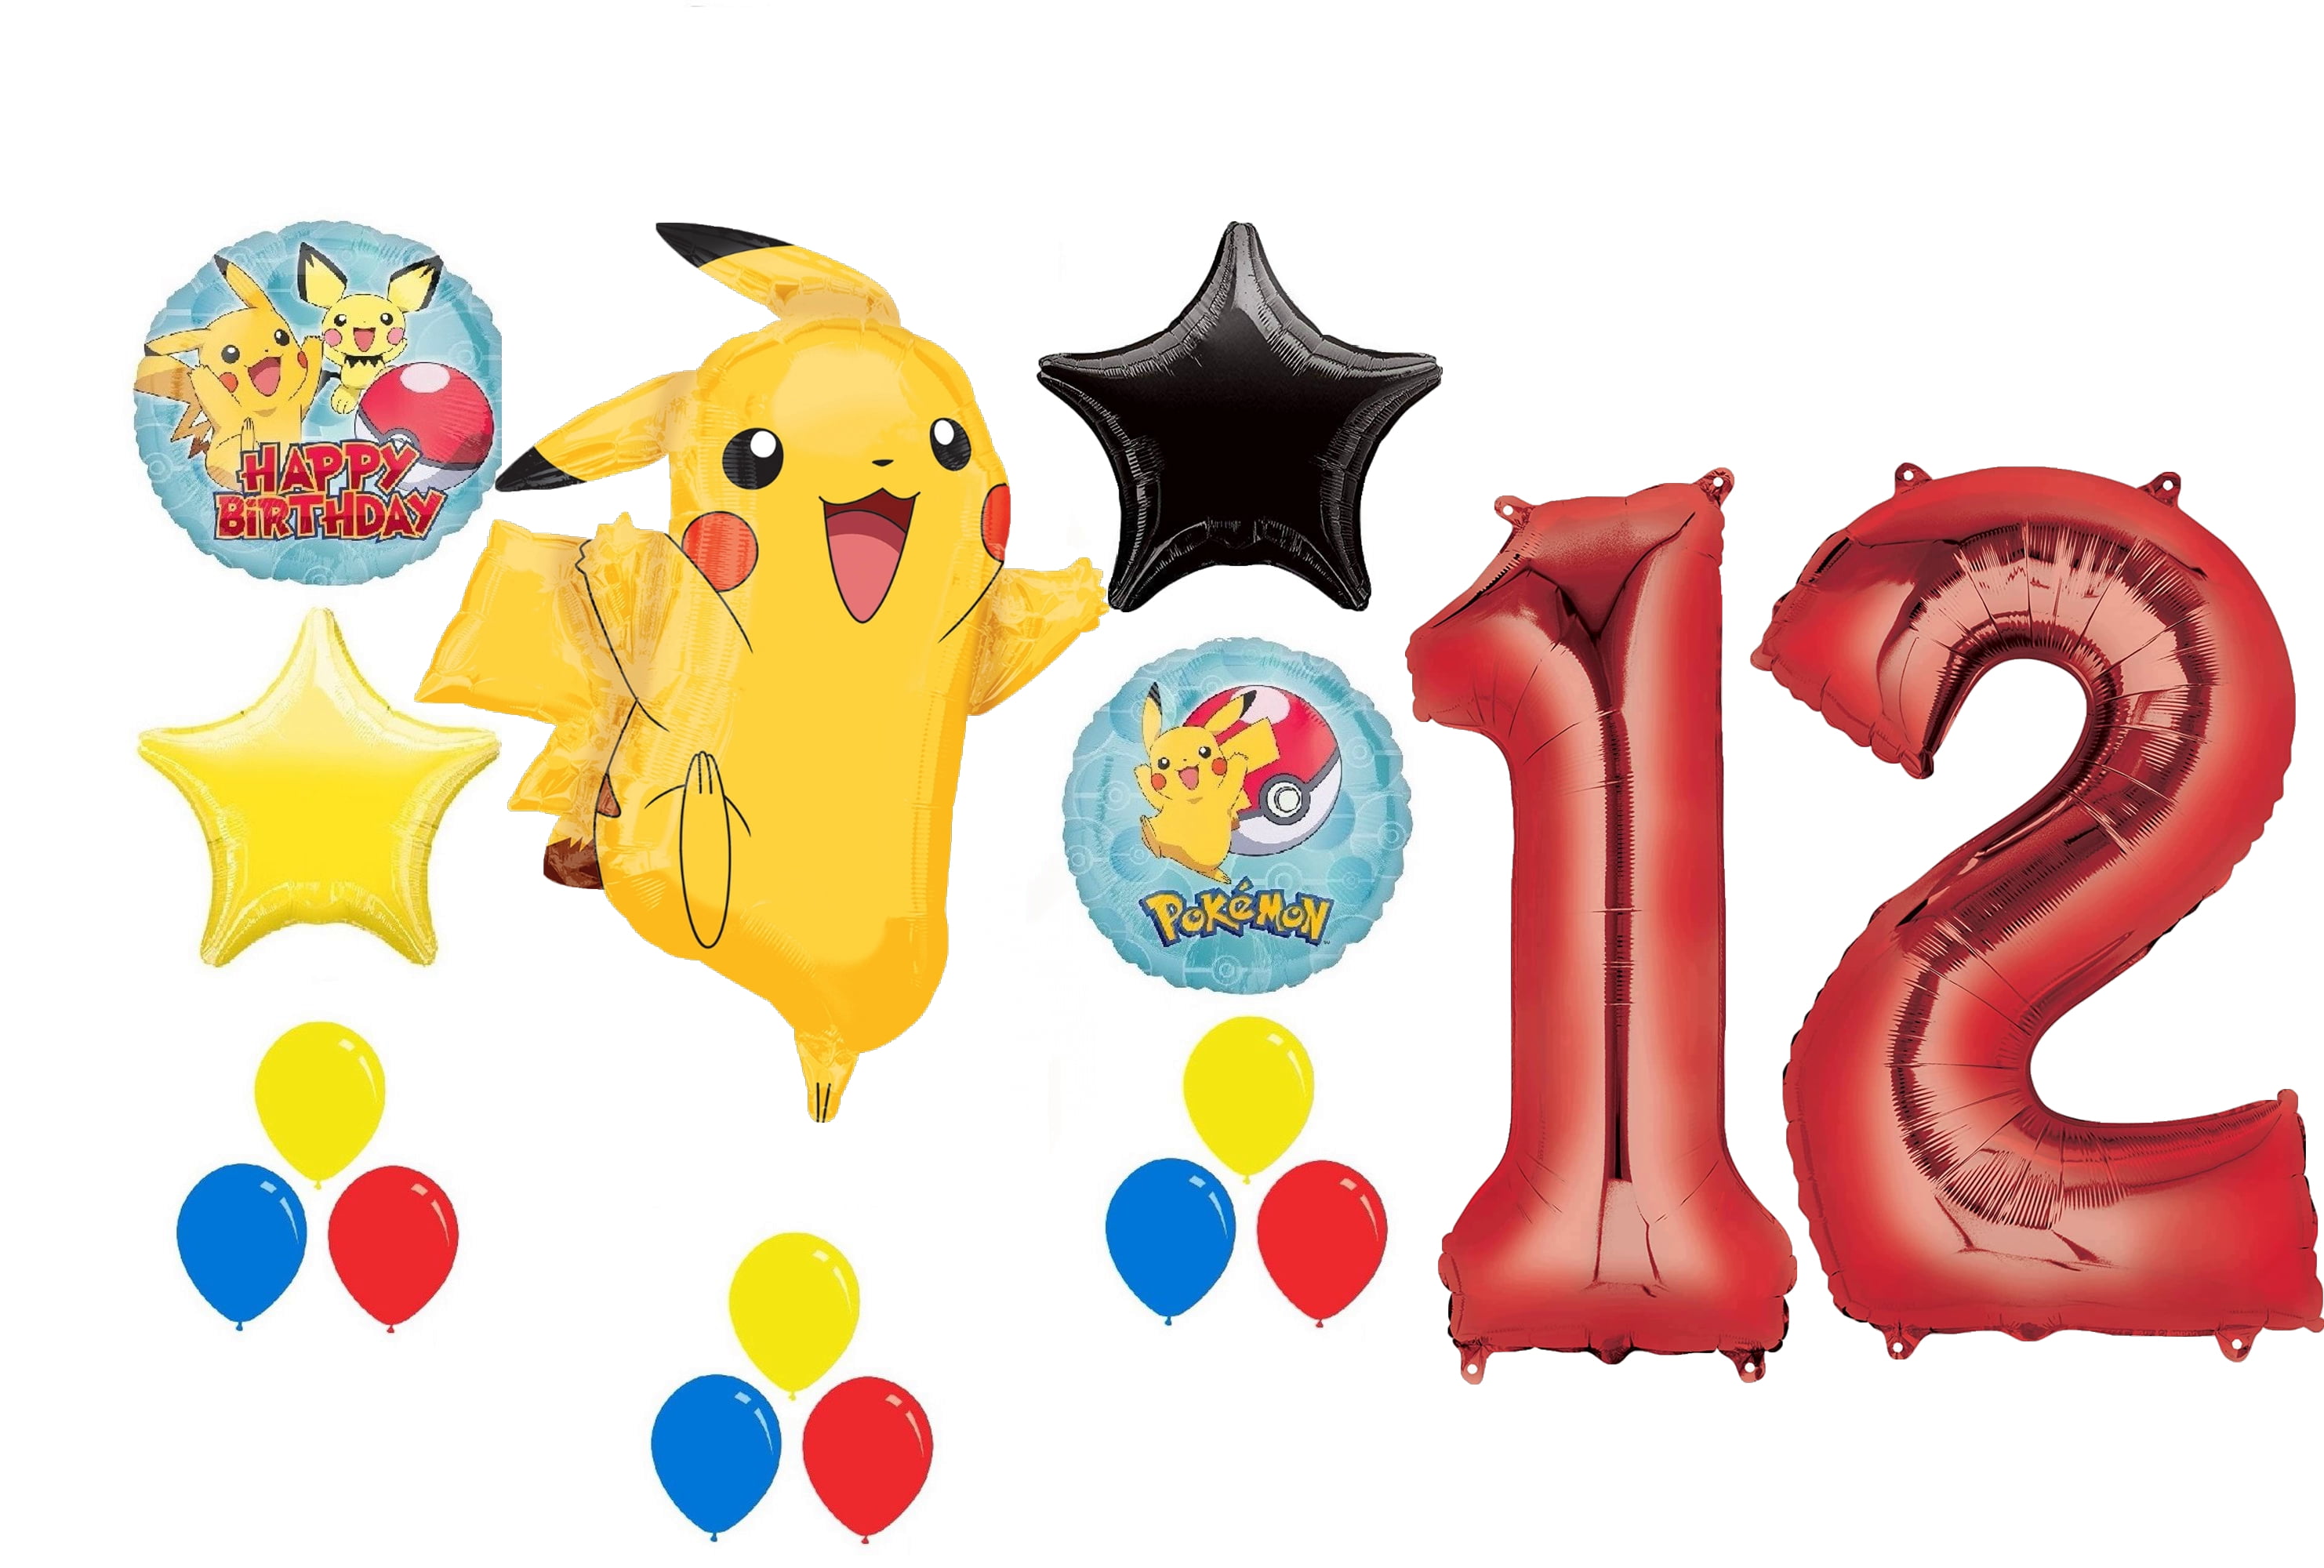 Bouquet de globos Pokémon  Pokemon party decorations, Pokemon party, Party  decorations